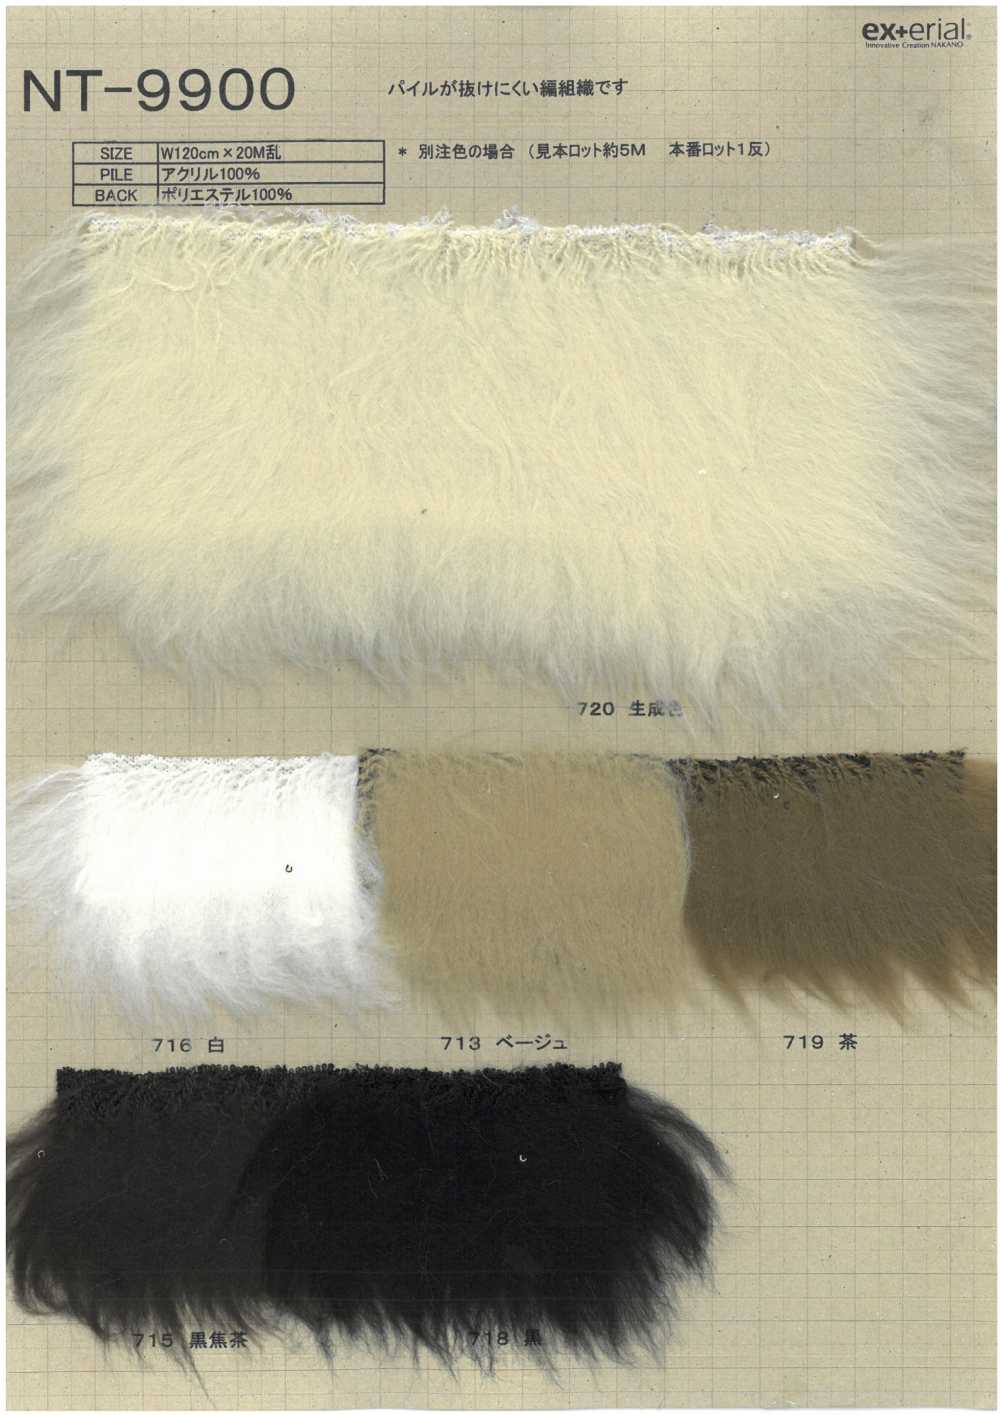 NT-9900 Fourrure Artisanale [Mouton][Fabrication De Textile] Industrie Du Jersey Nakano